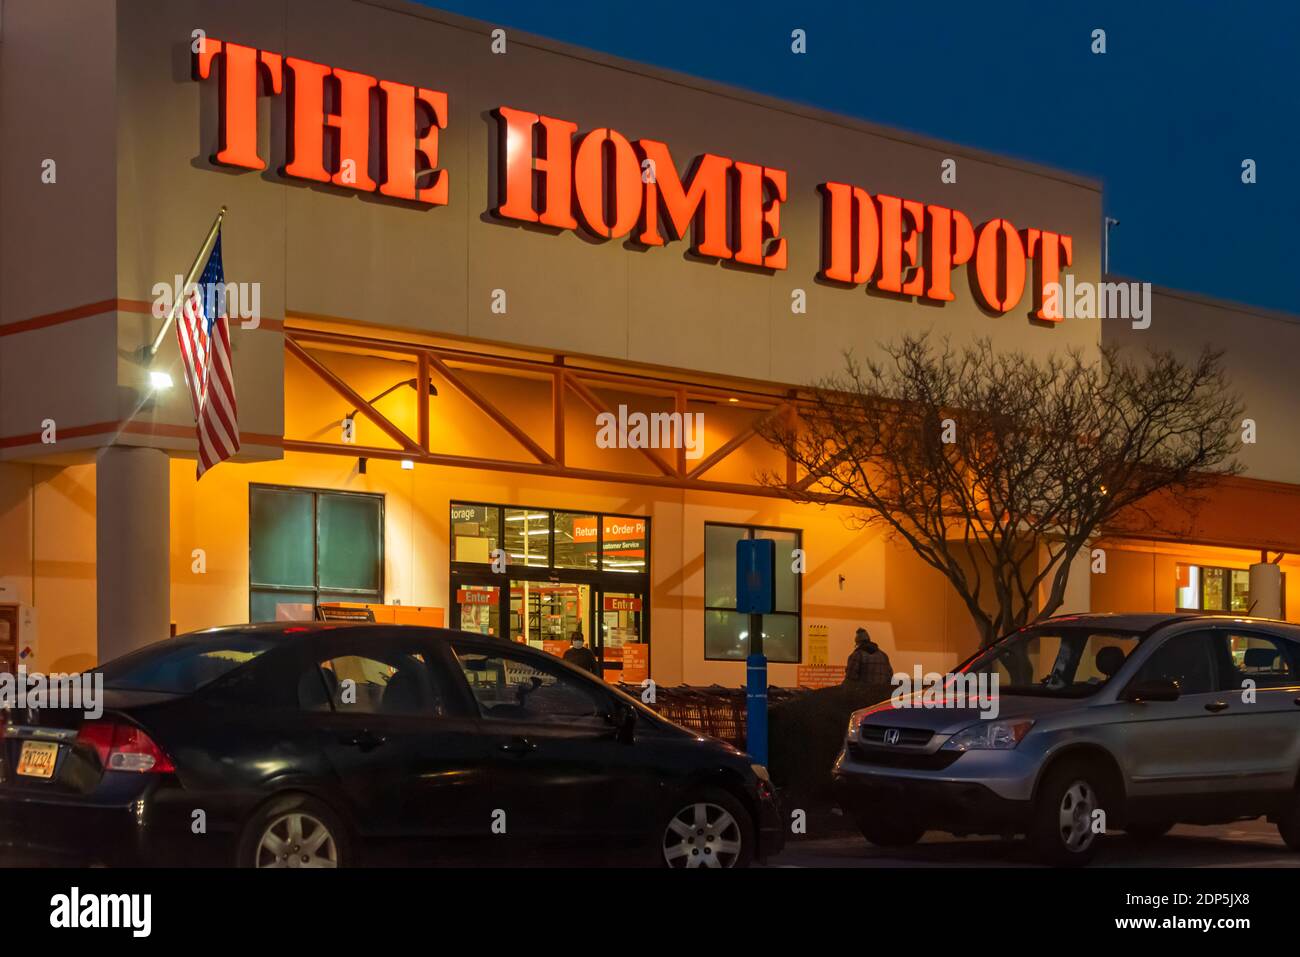 Home Depot, une chaîne de bricolage basée à Atlanta, à Lilburn, en Géorgie, juste à l'est d'Atlanta. (ÉTATS-UNIS) Banque D'Images